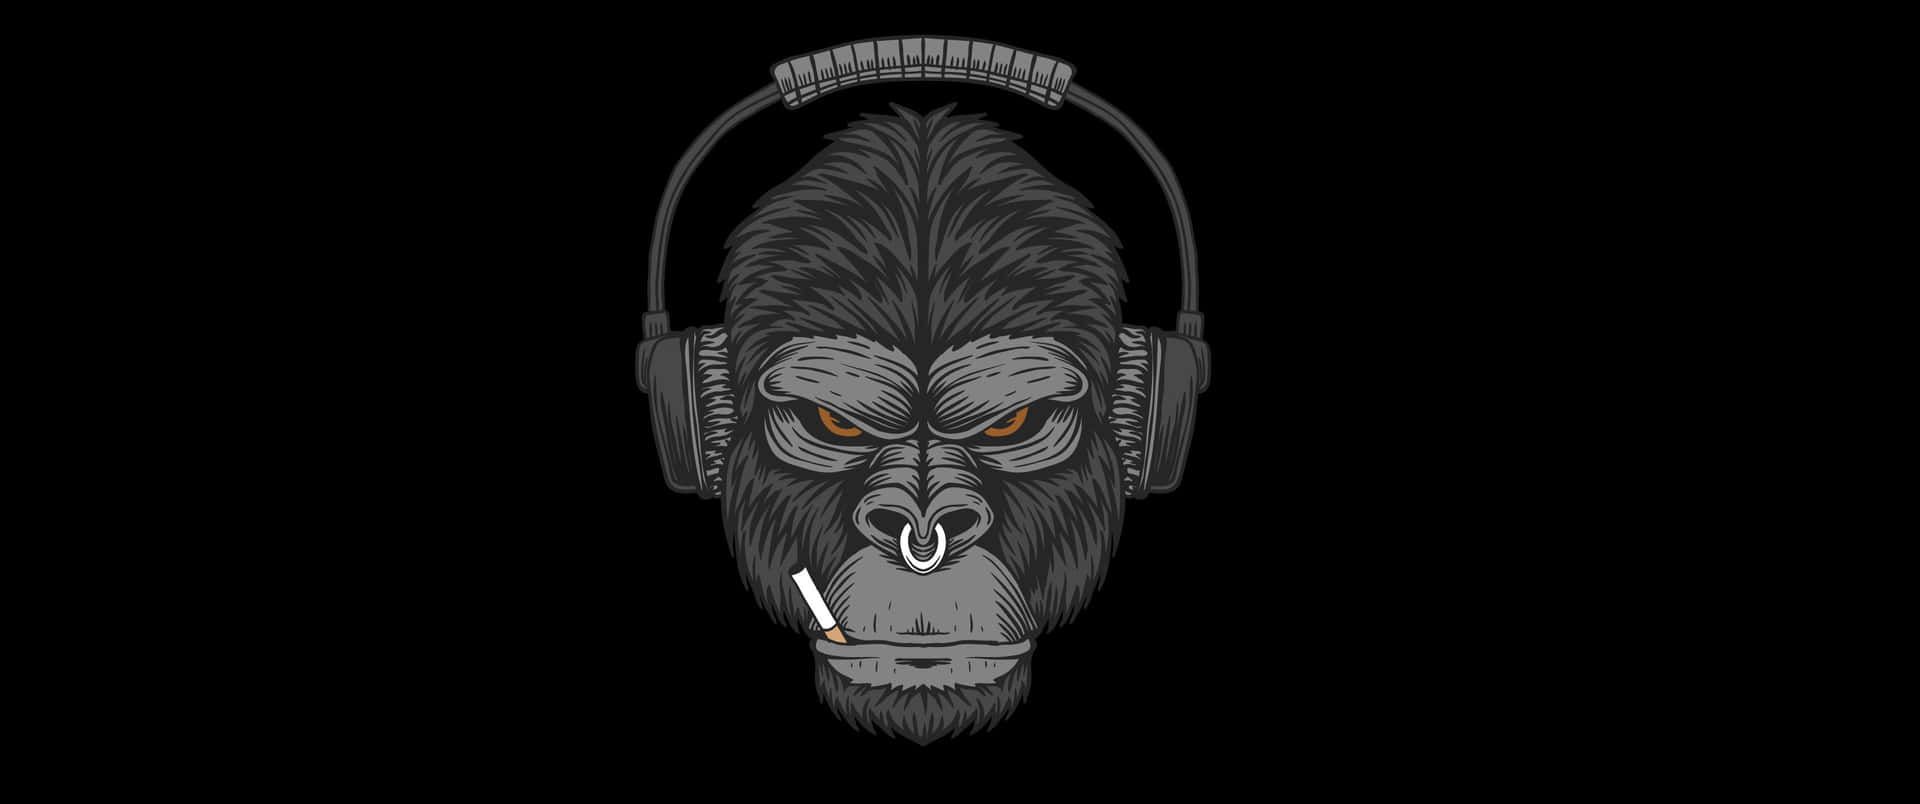 3440x1440pbakgrund Med Gorilla Med Cigarett